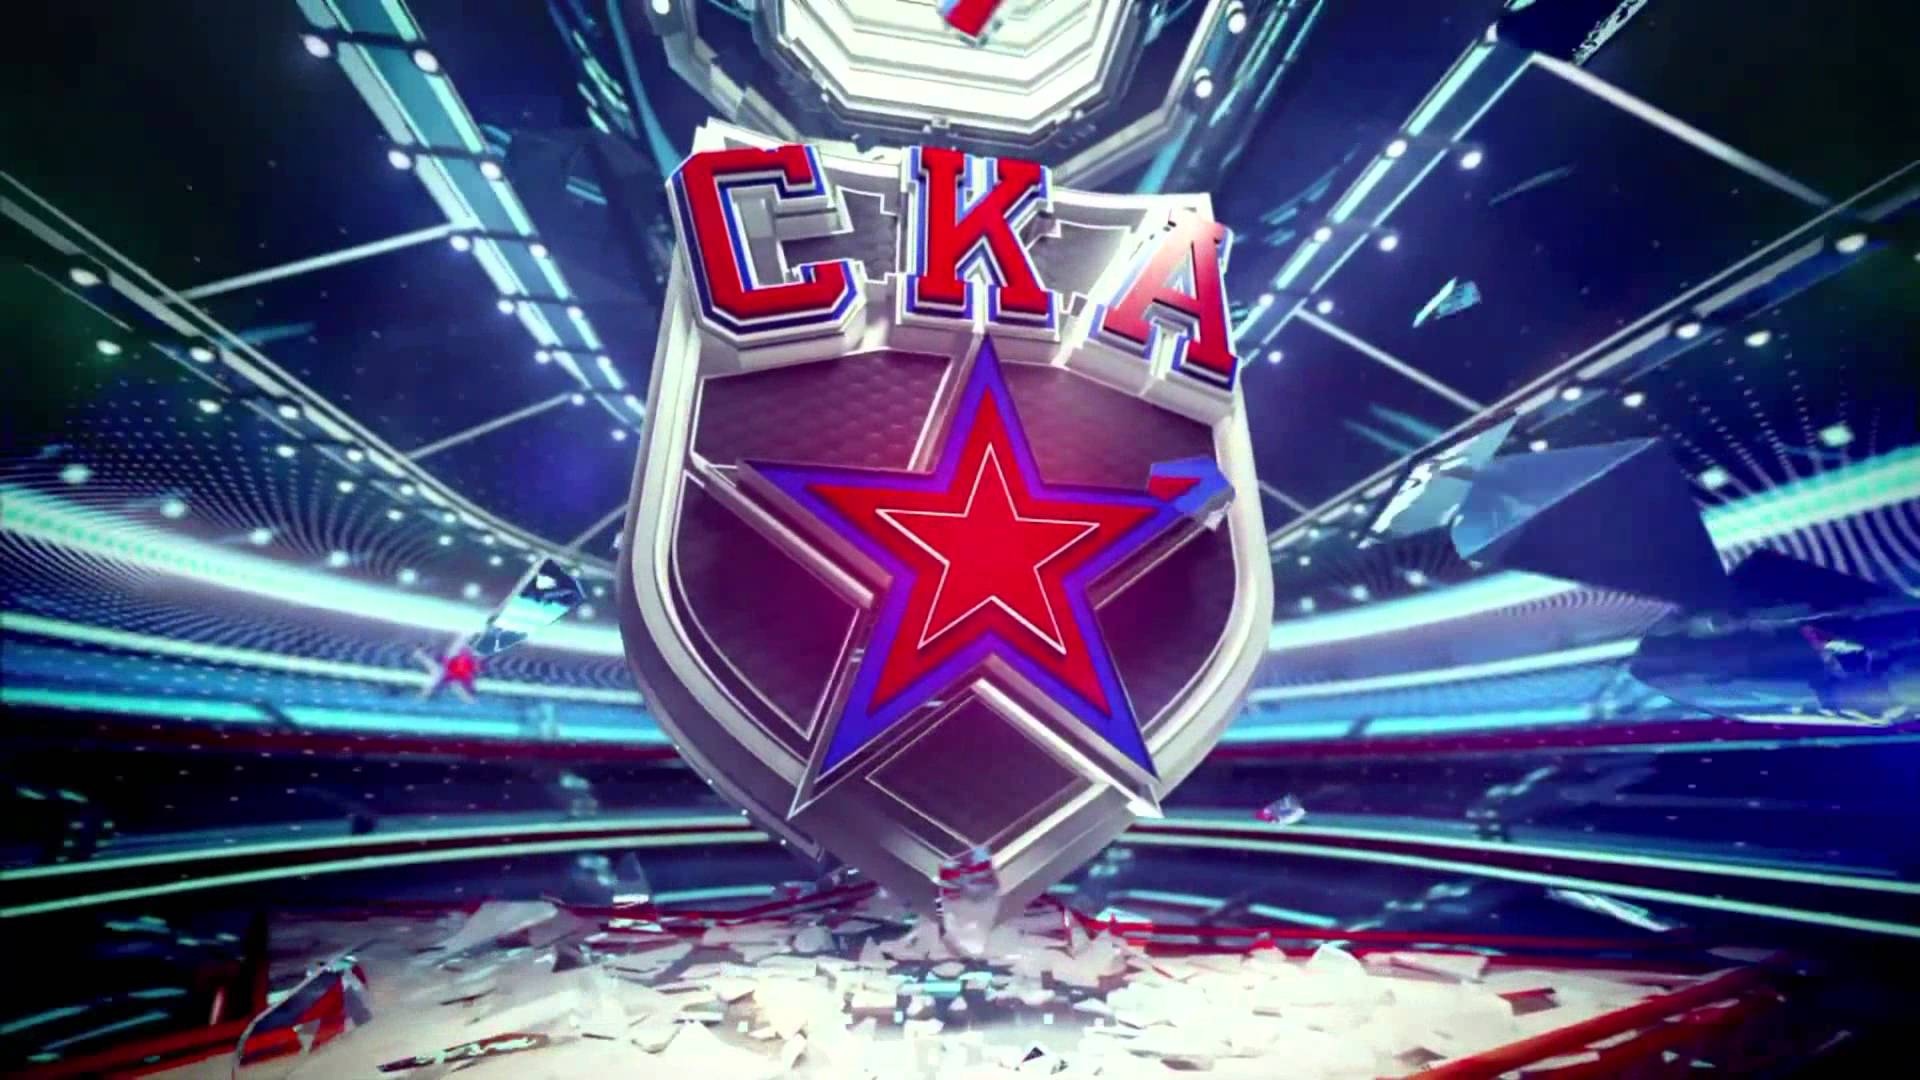 Ска обои. Эмблема хоккейного клуба СКА Санкт-Петербург. СКА Питер хоккей. СКА хоккейный клуб логотип. Картинки хк СКА.